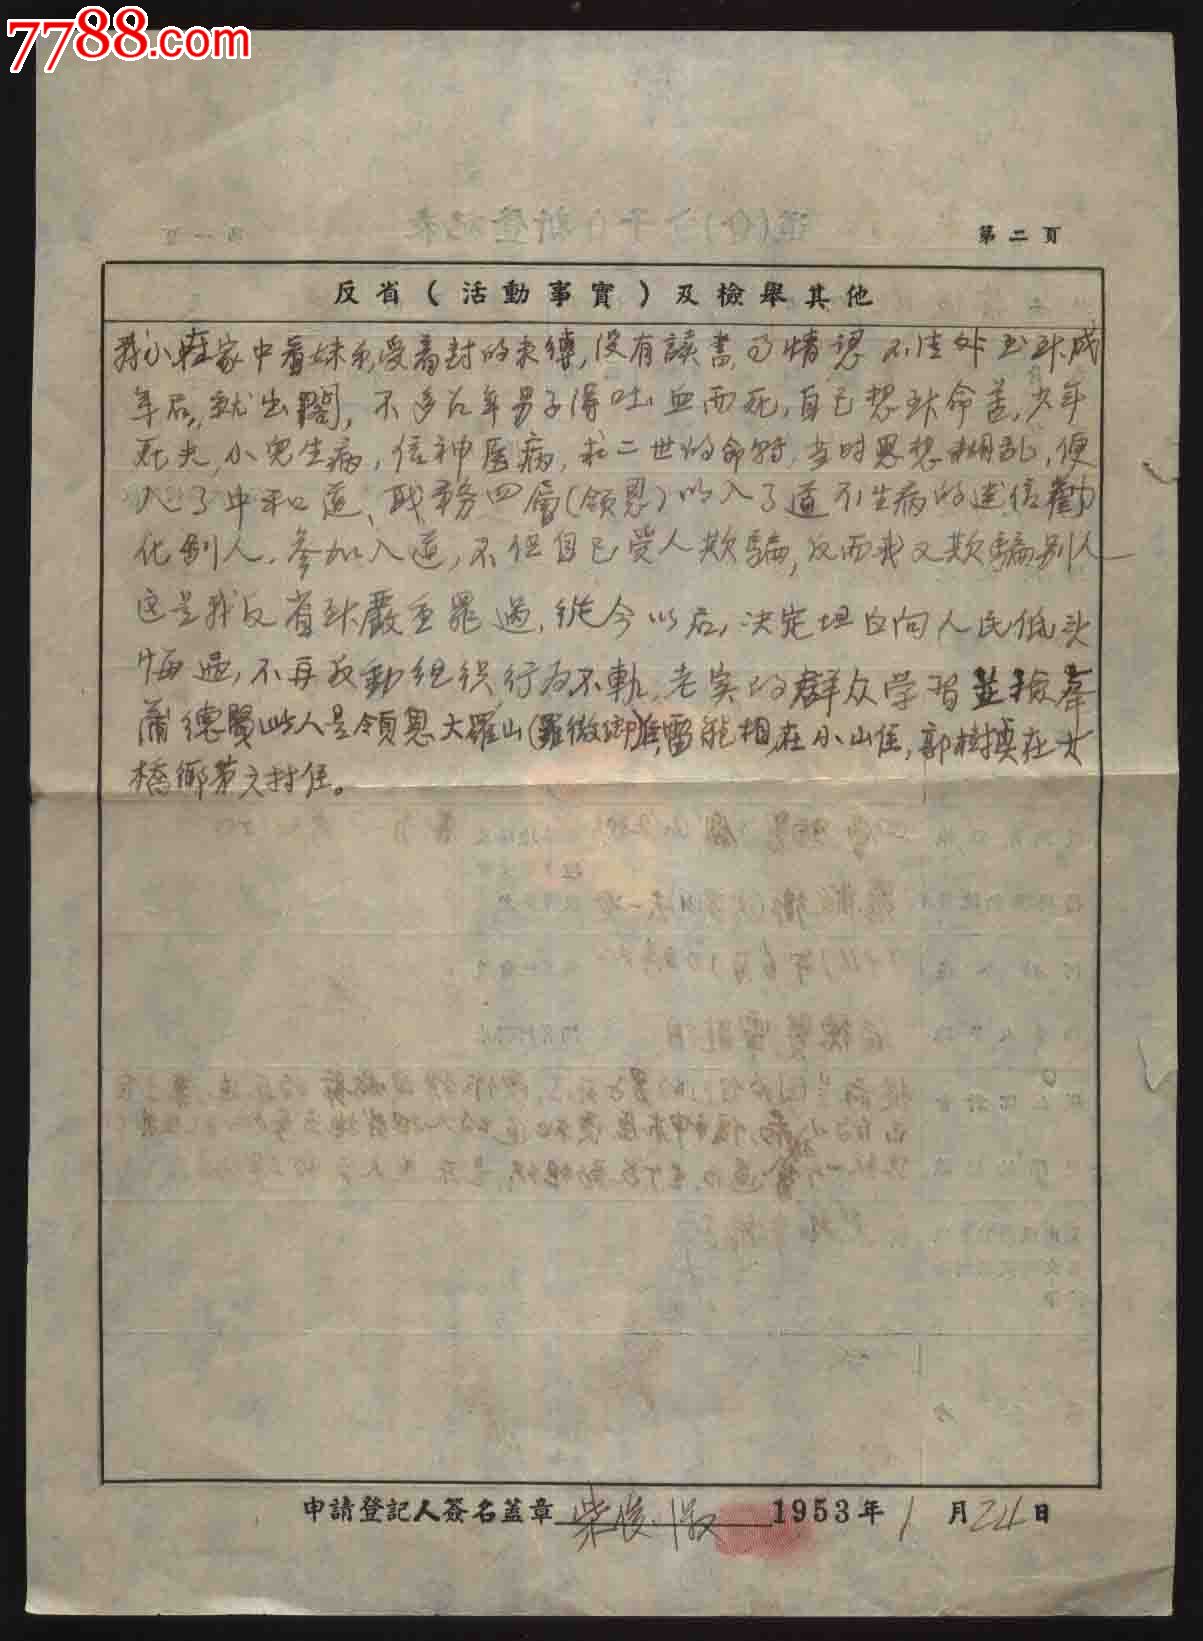 1953年道(会)分子自新登记表(籍贯:四川长寿县